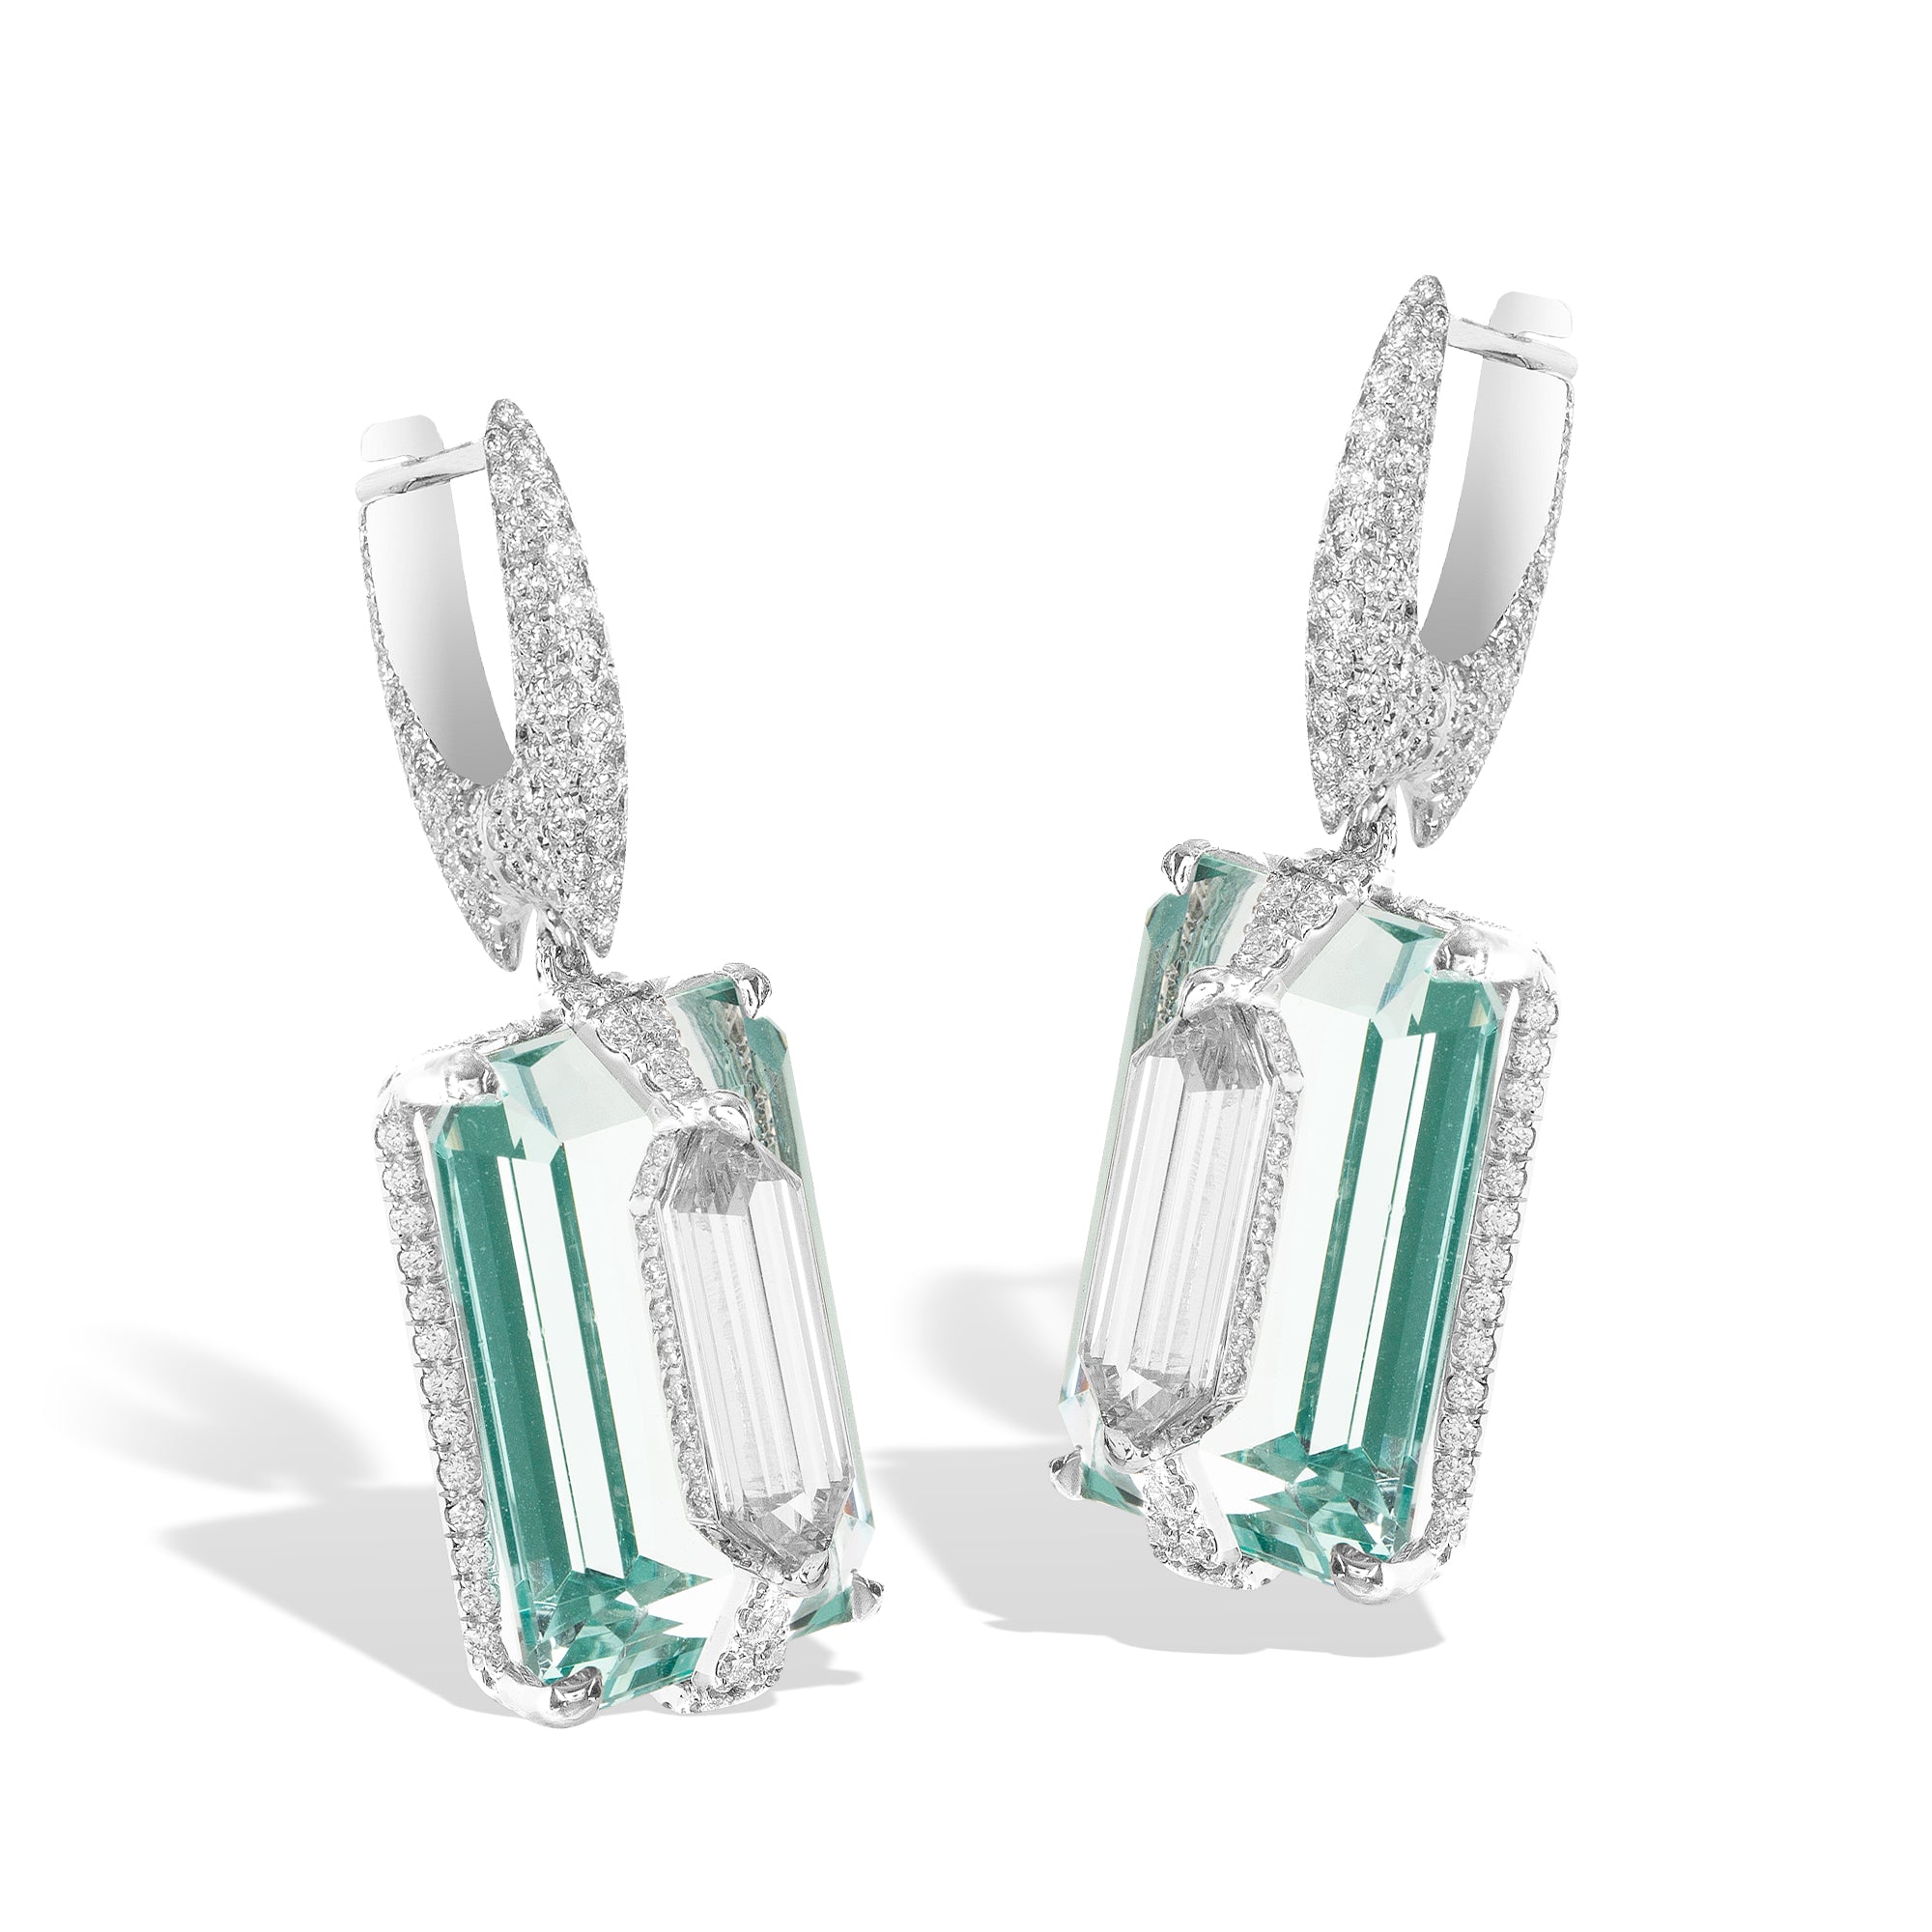 Kissing - Diamond and Green Beryl Earrings